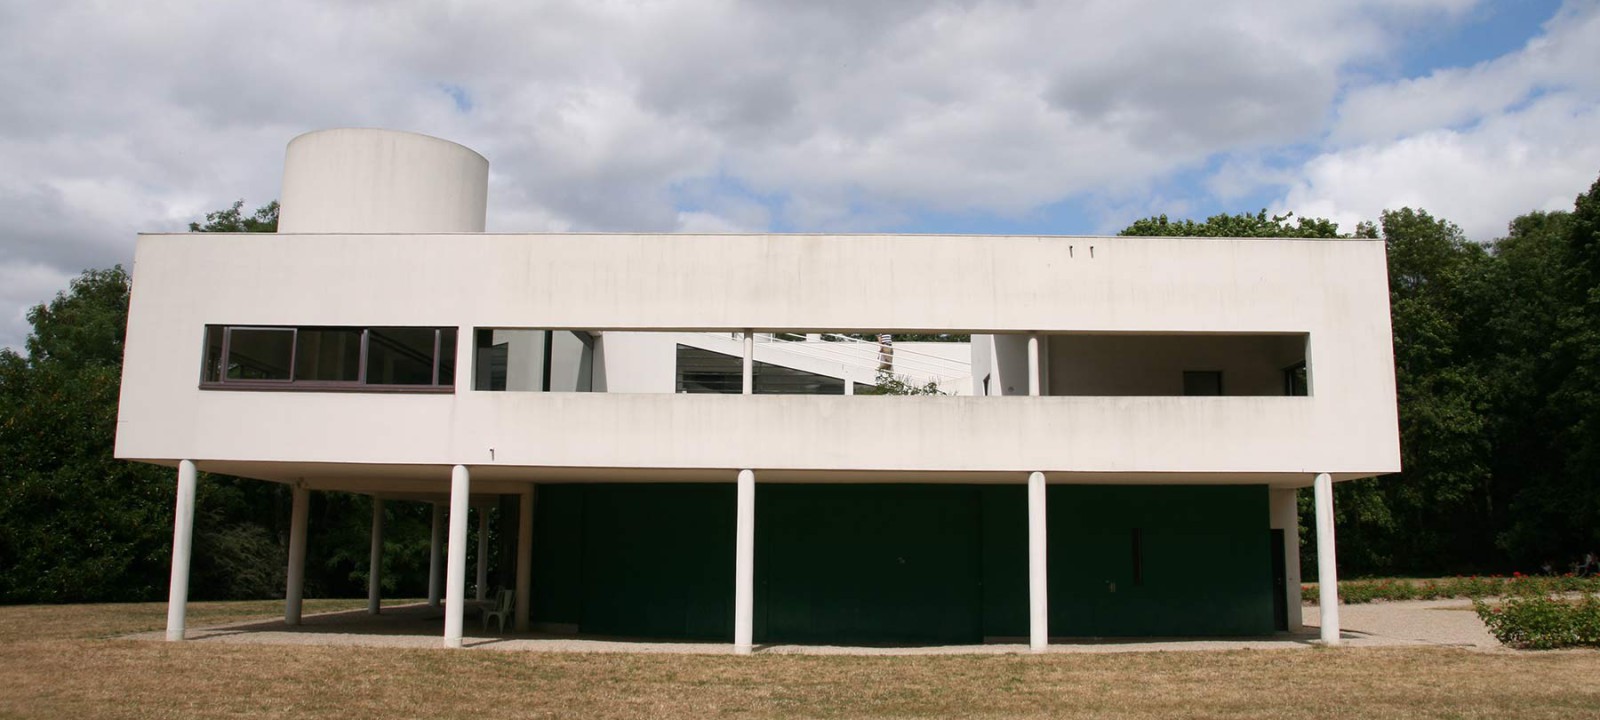 Villa Savoye, Le Corbusier